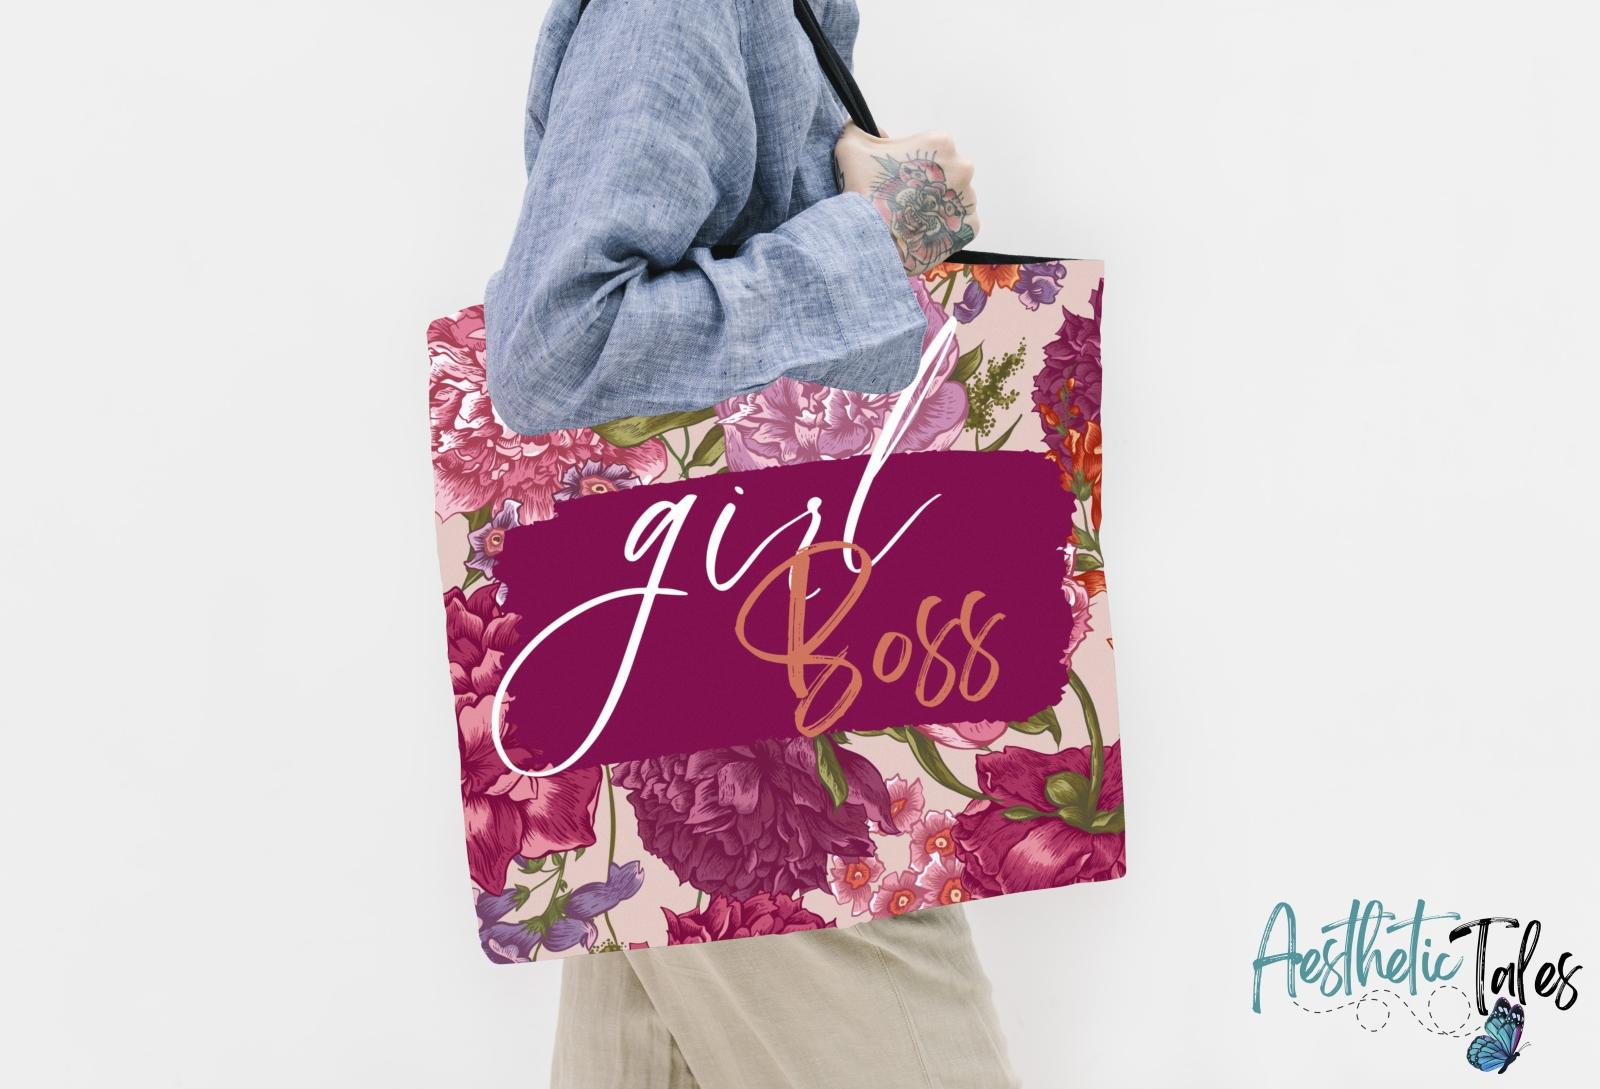 Girl Boss - Tote Bag